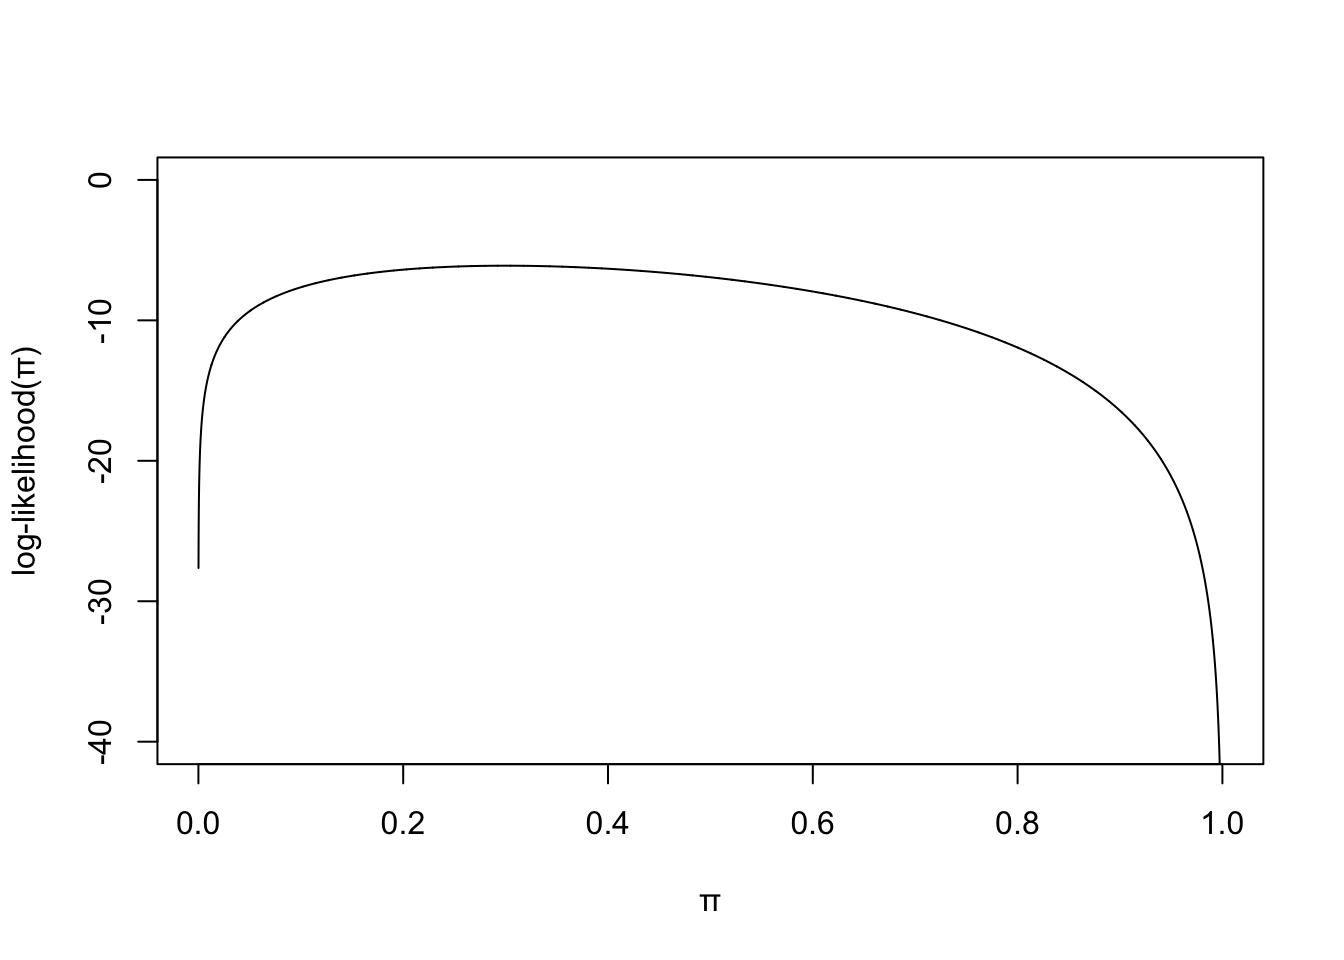 Log-likelihood for binomial model.